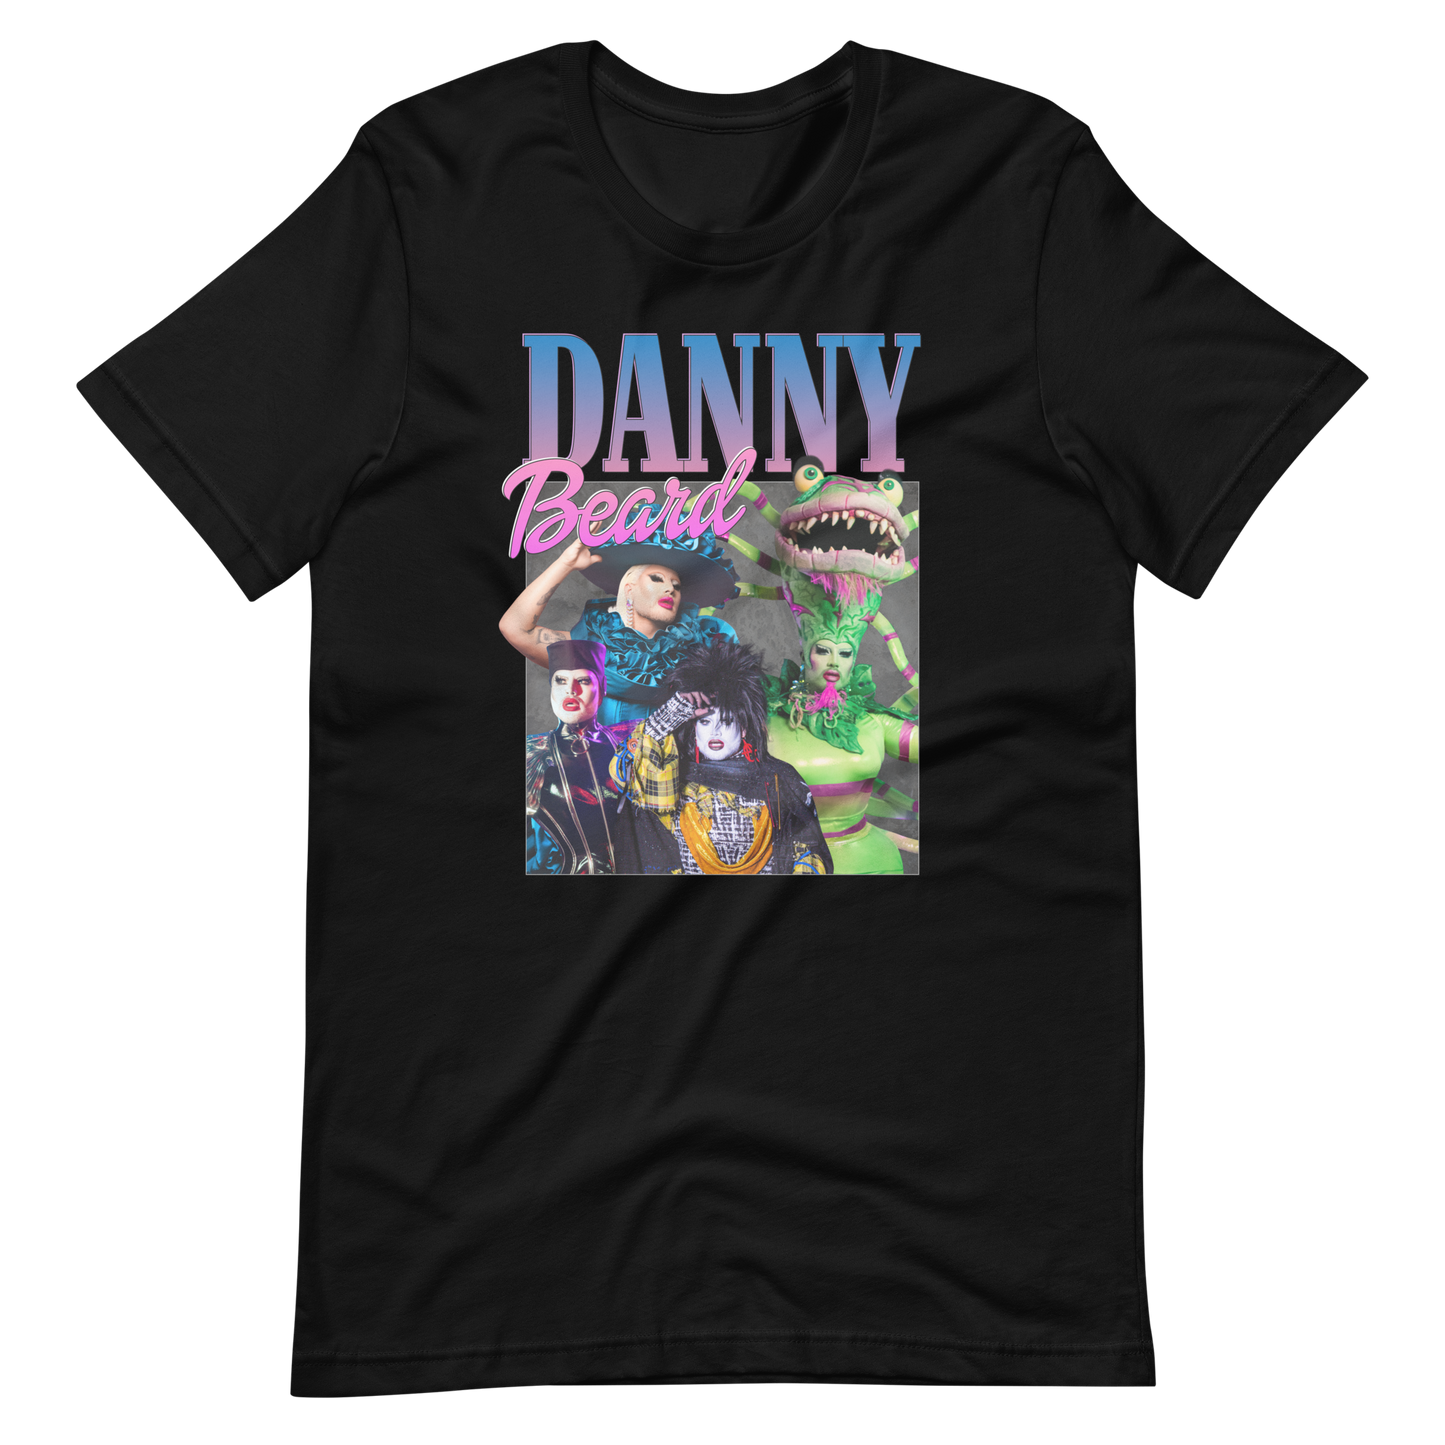 Danny Beard Drag Race T-shirt